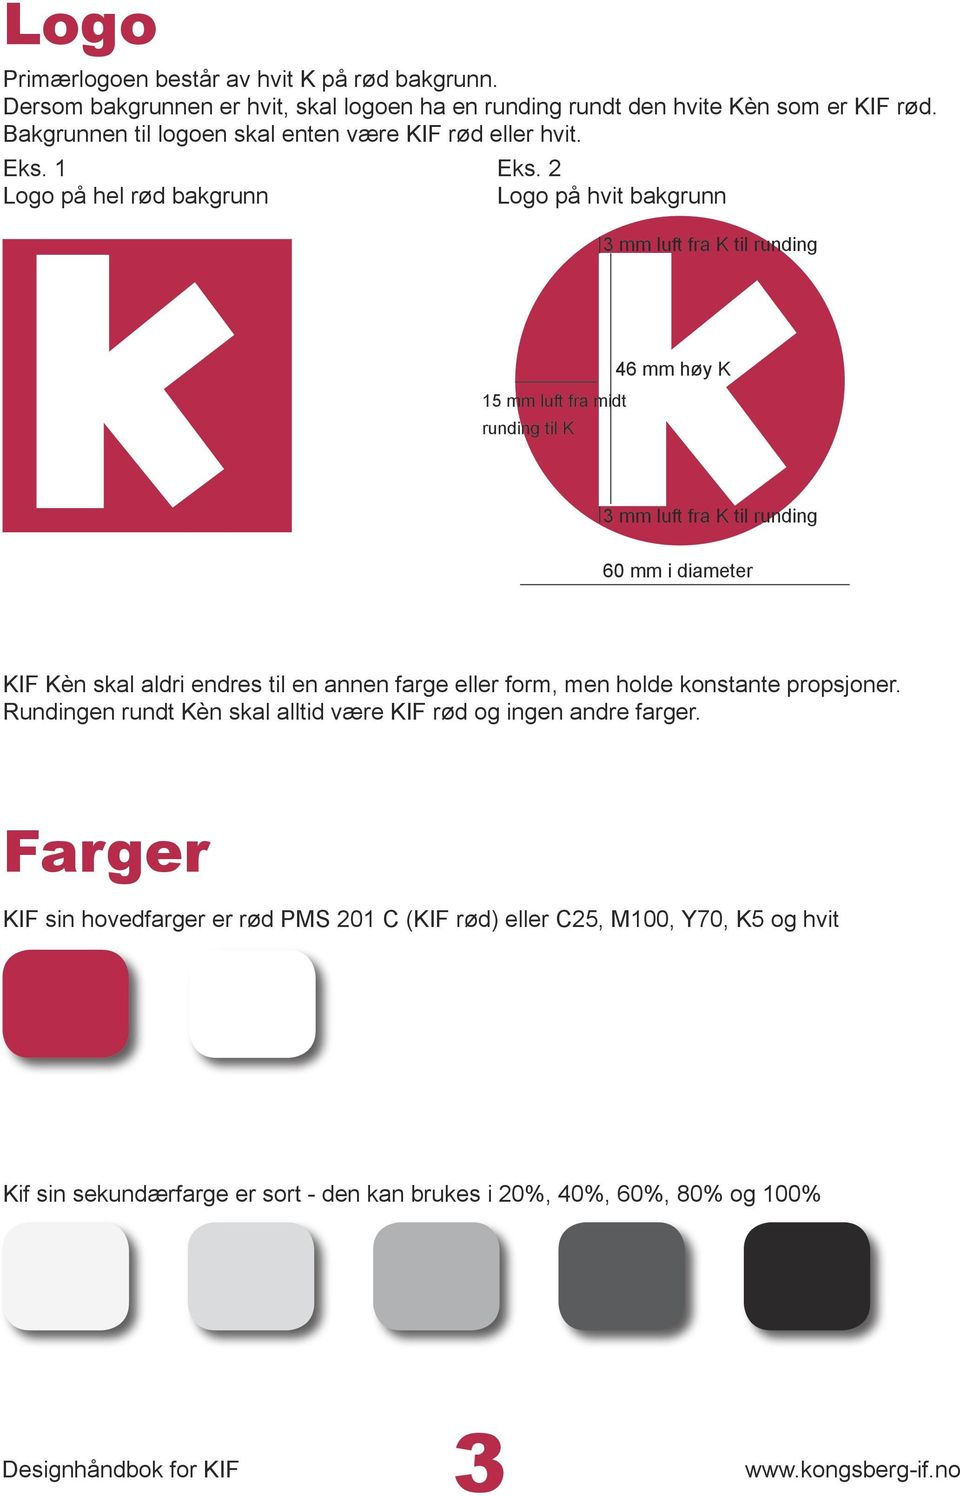 2 Logo på hvit bakgrunn 3 mm luft fra K til runding 15 mm luft fra midt runding til K 46 mm høy K 3 mm luft fra K til runding 60 mm i diameter KIF Kèn skal aldri endres til